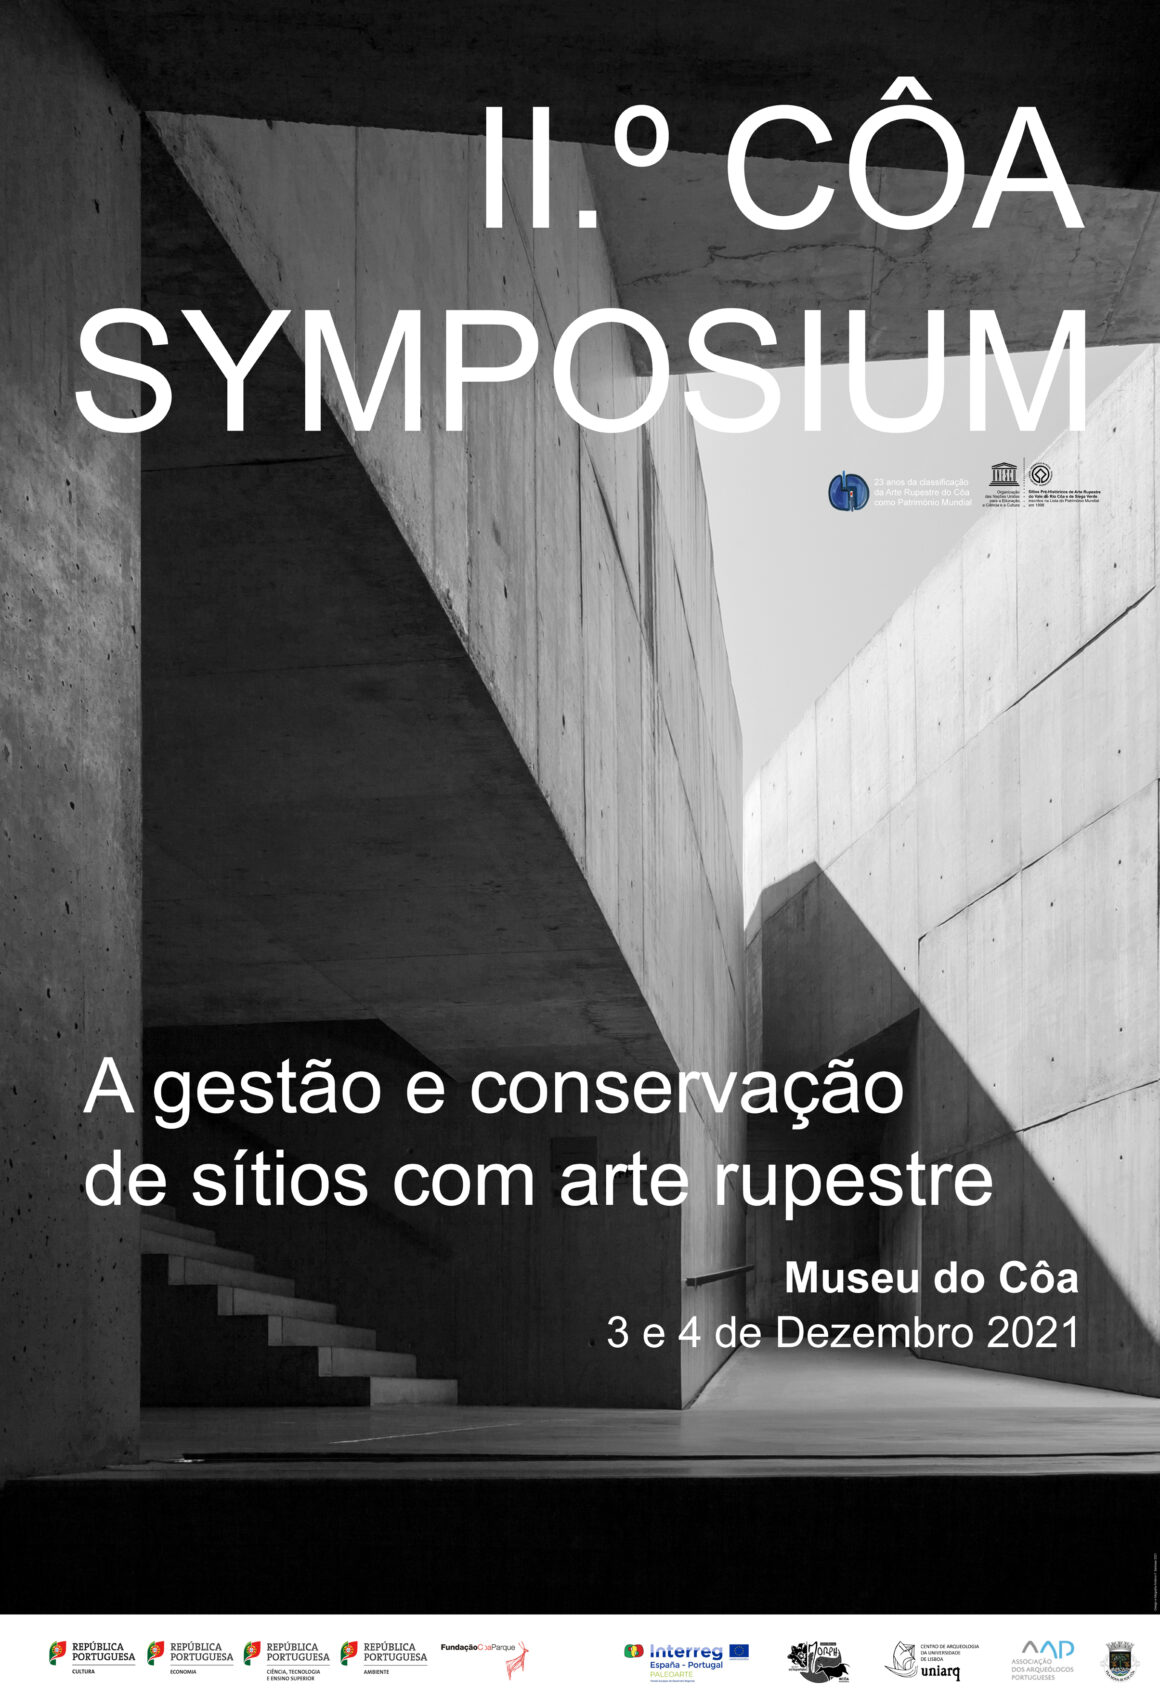 II Côa Symposium A gestão e conservação de sítios com arte rupestre